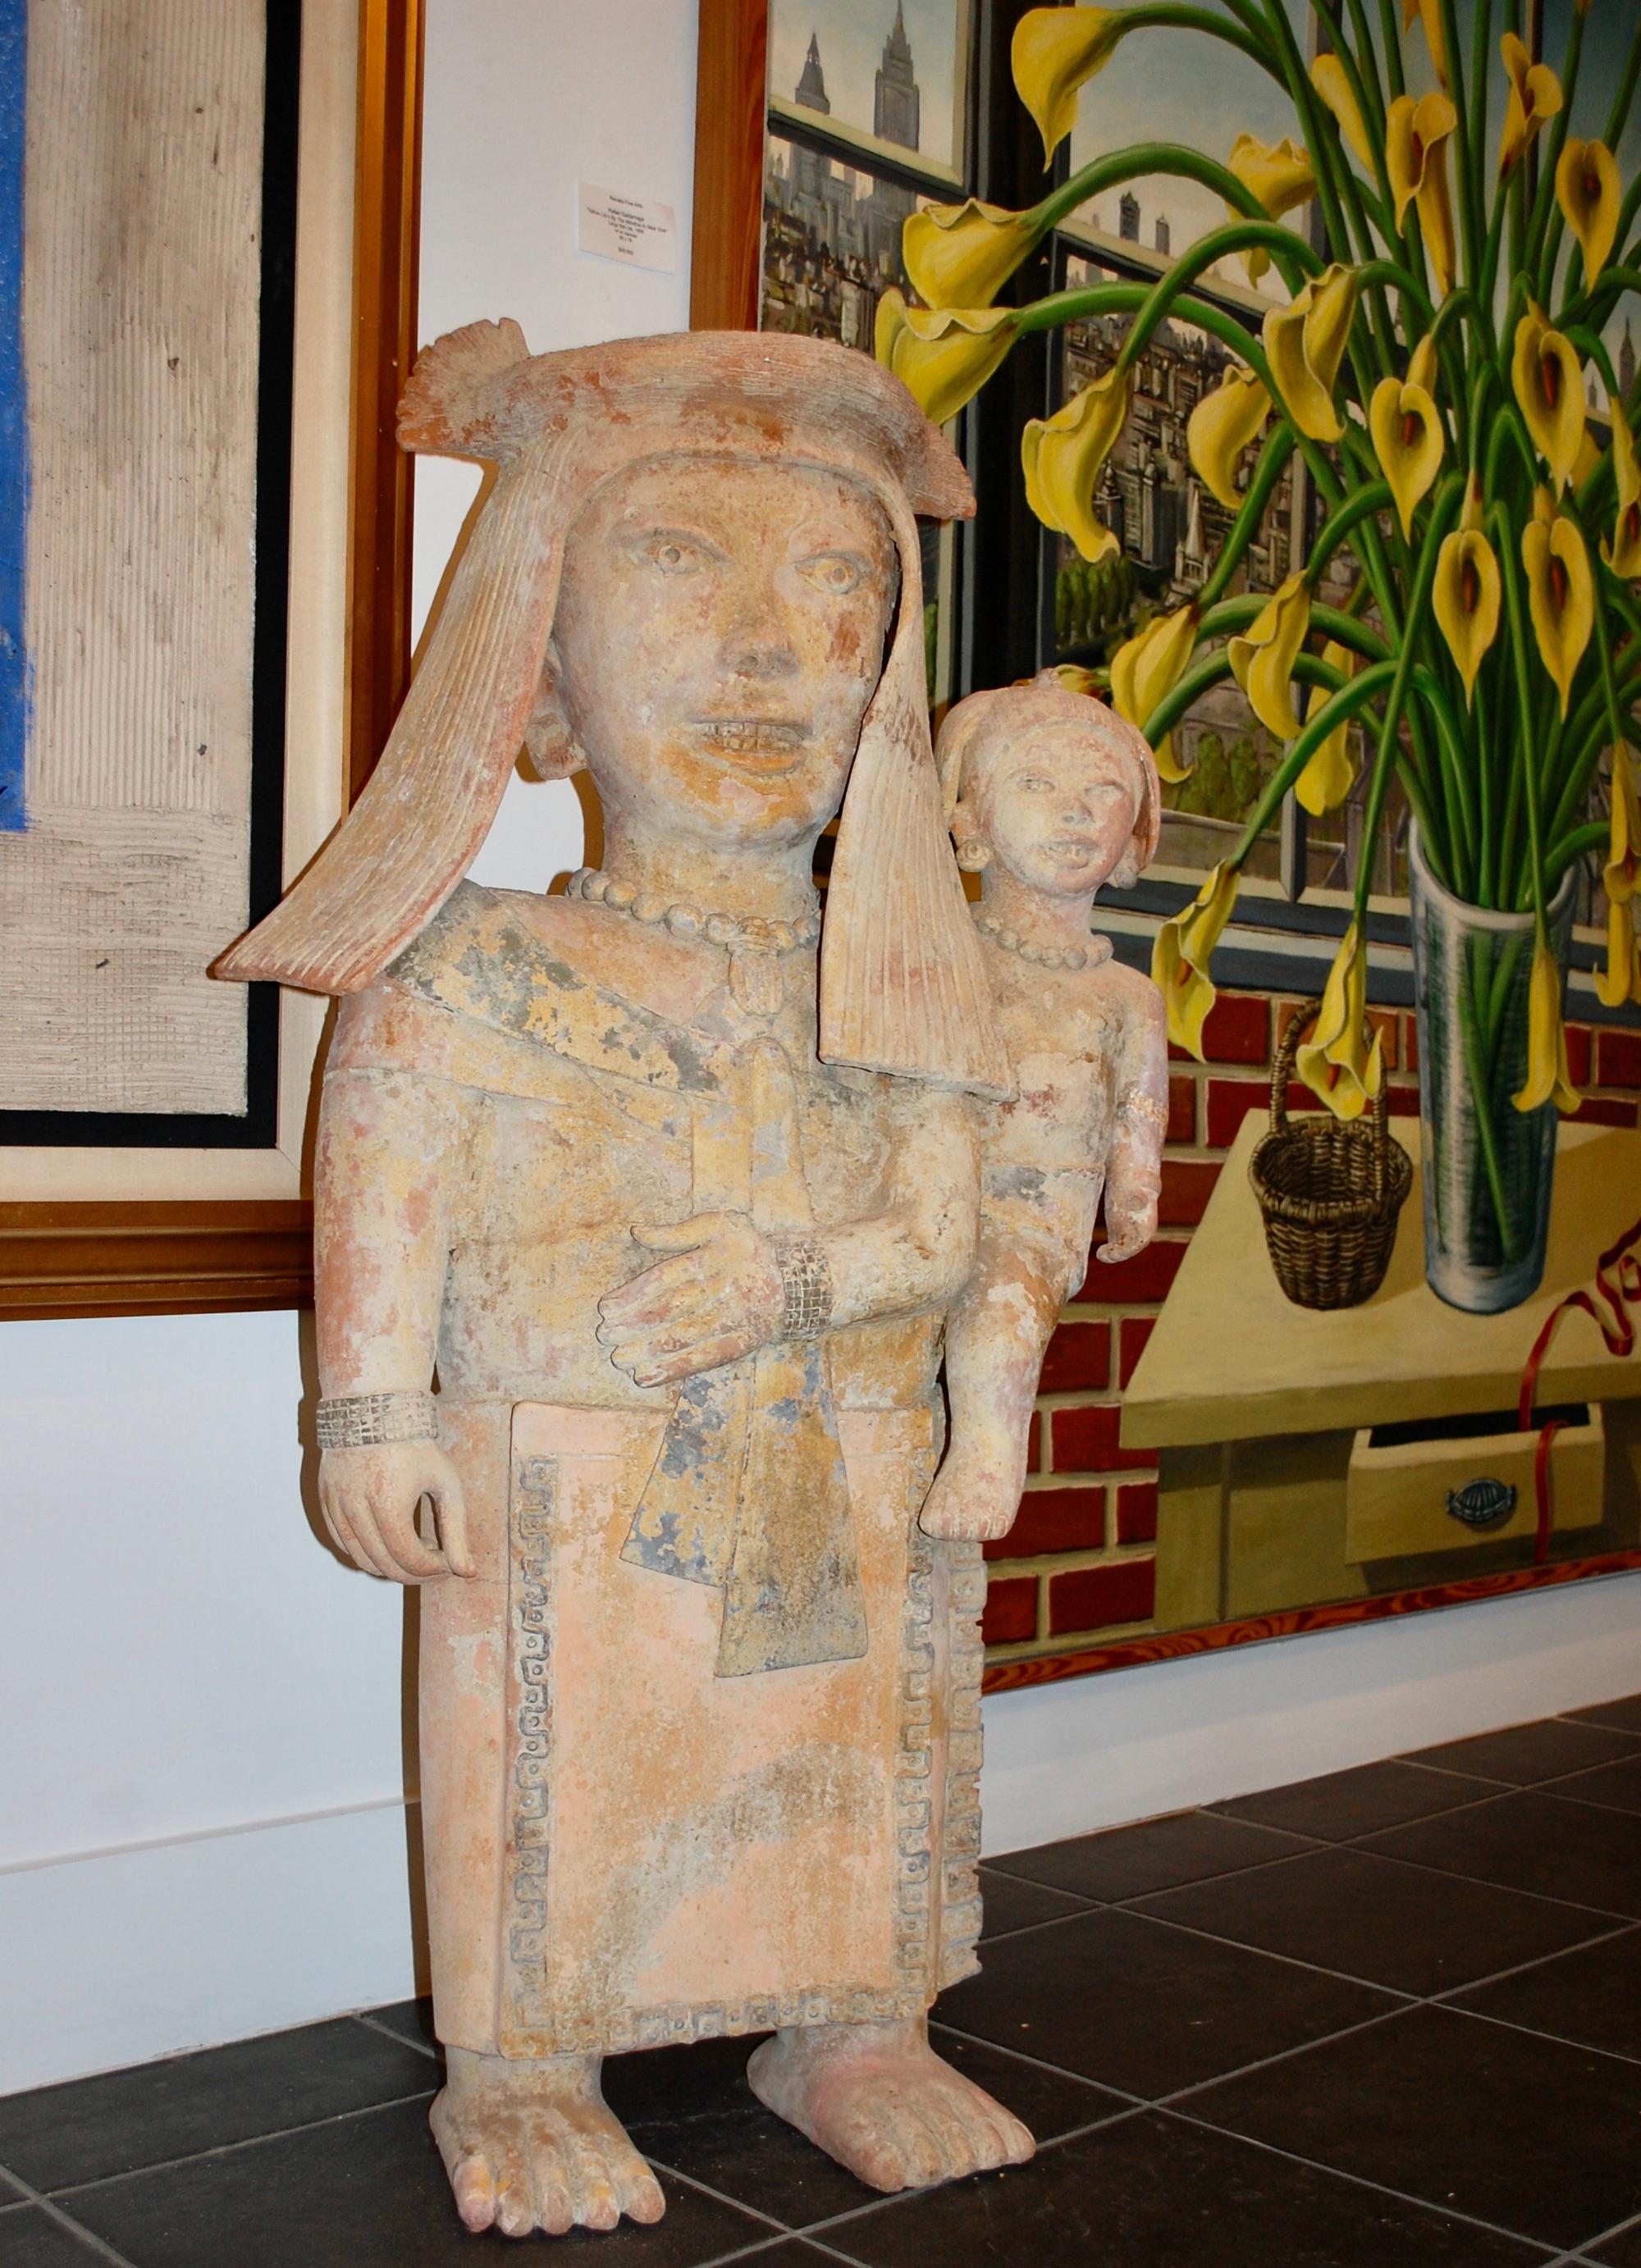   Mère tenant un bébé, grande sculpture en argile, style précolombien - Moderne Sculpture par Walter Bastianetto